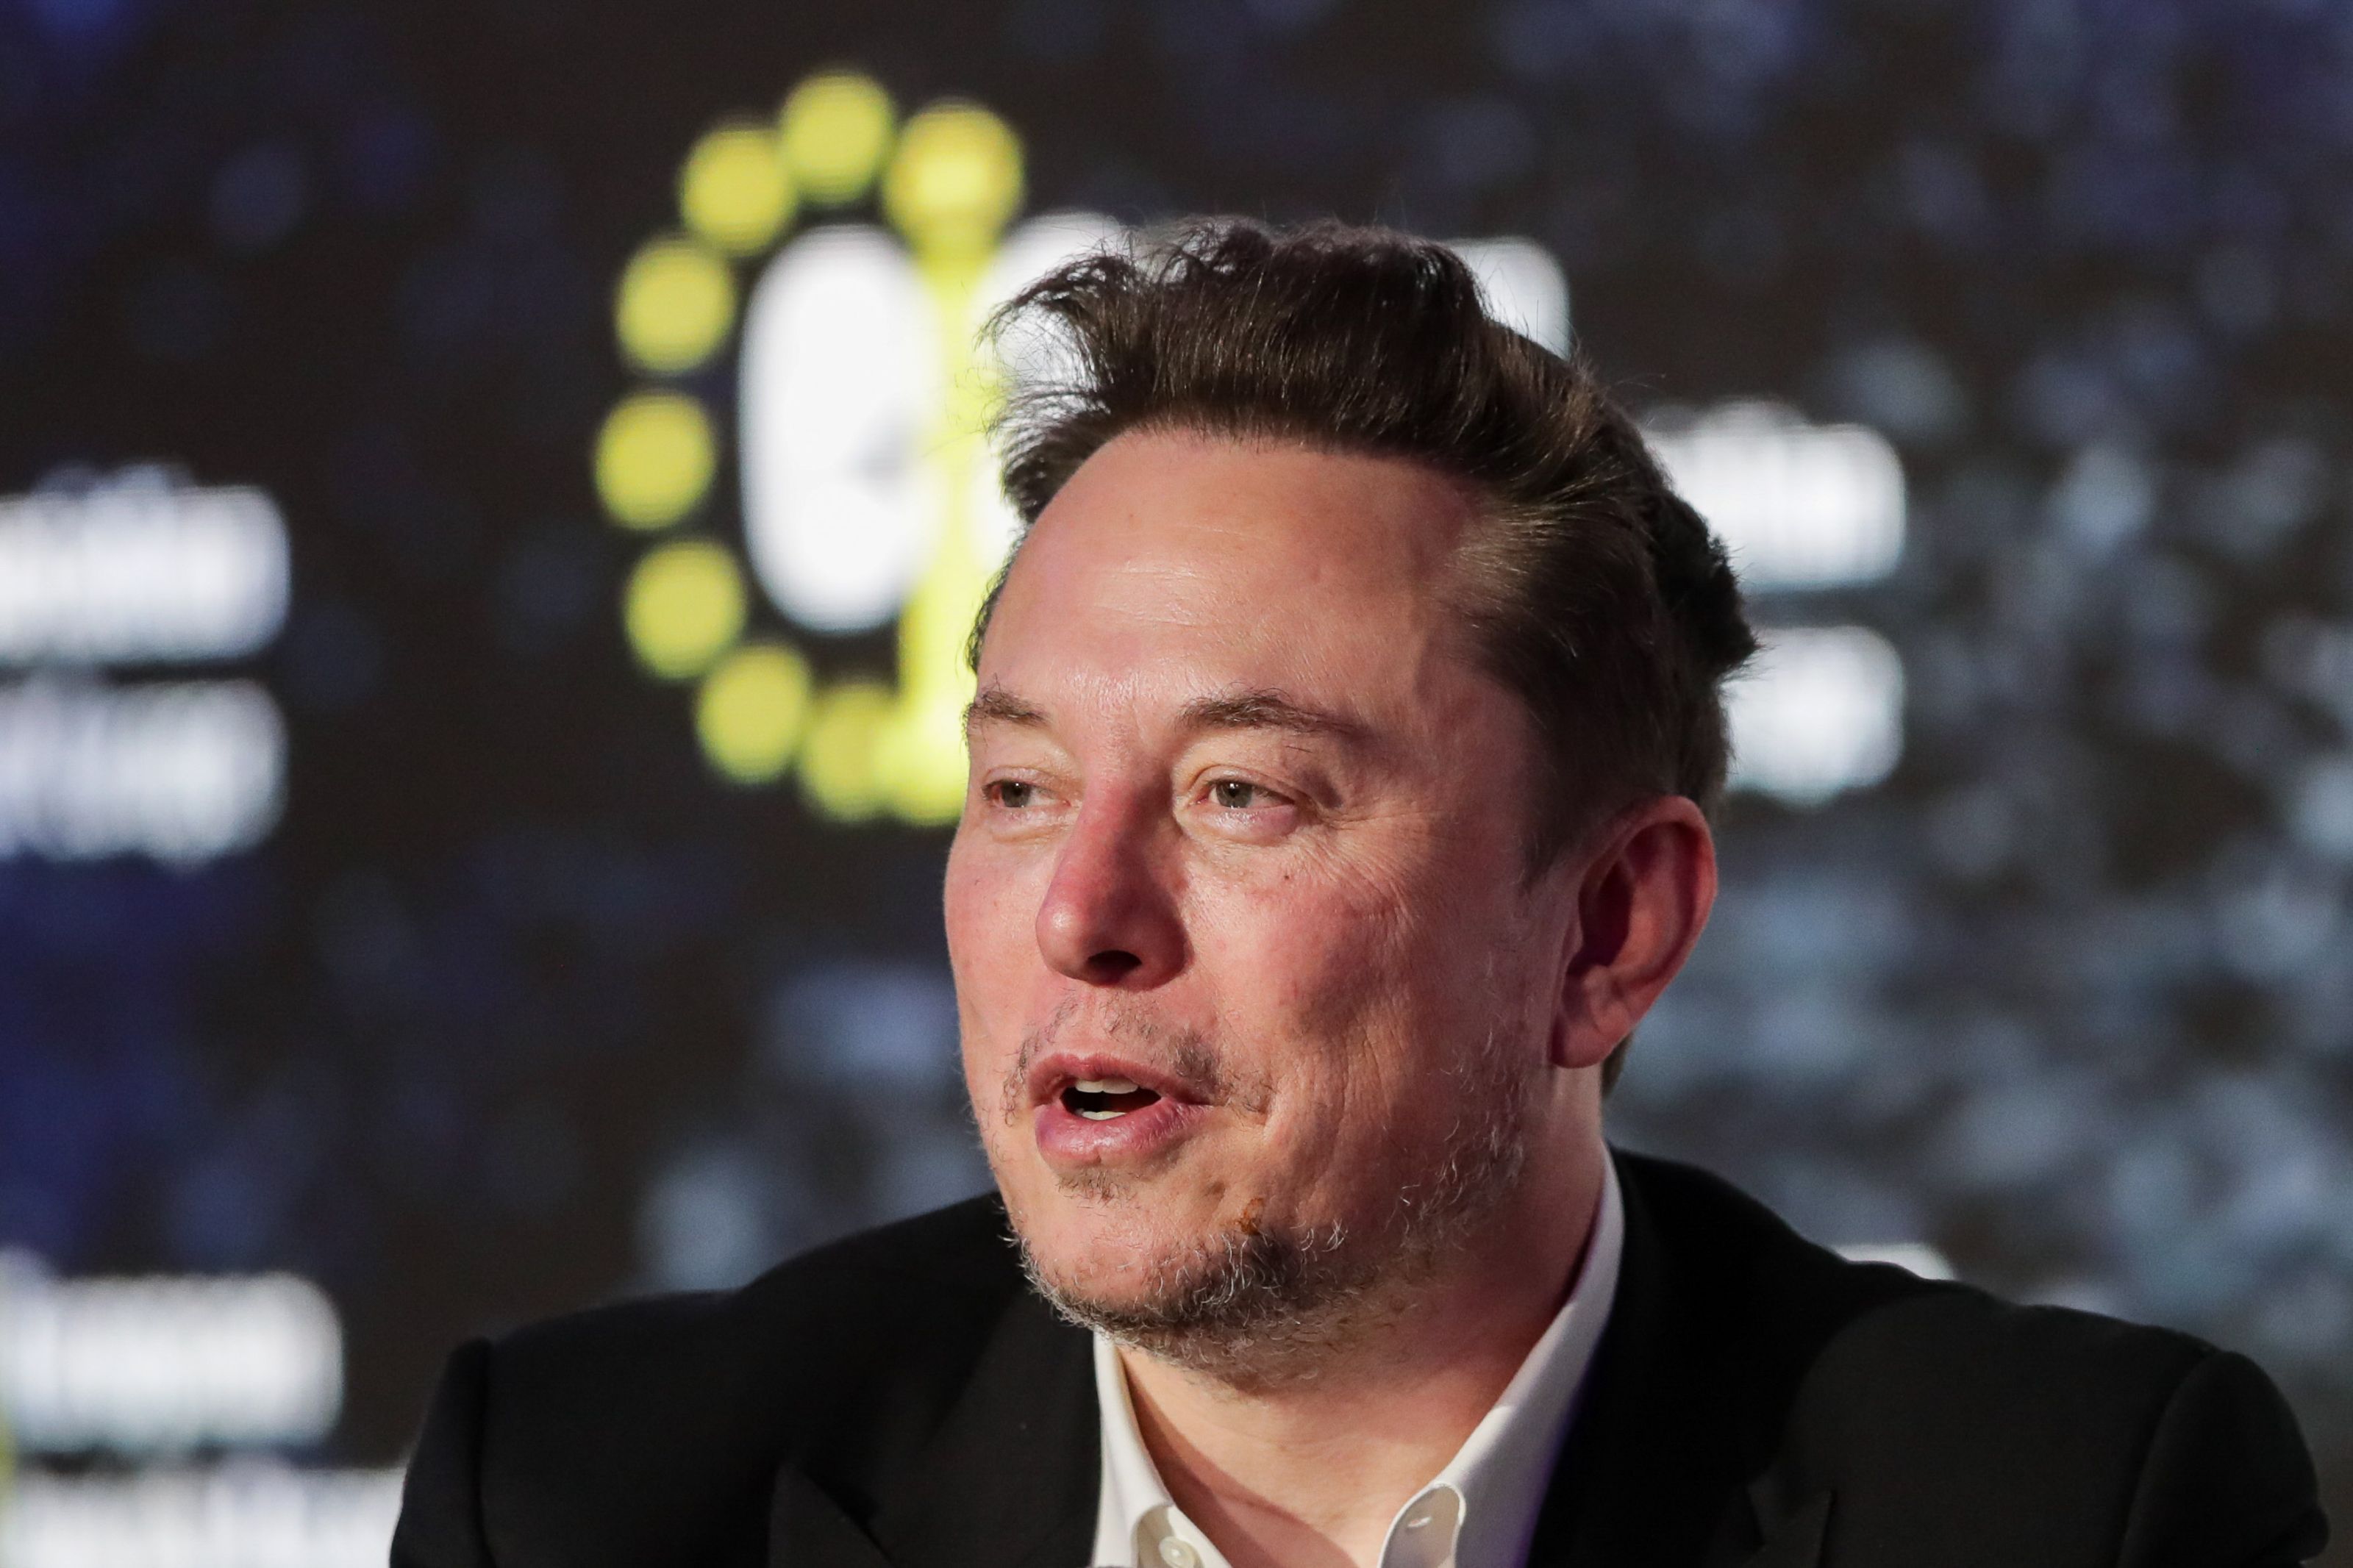 Tesla vrea să investească până la 3 miliarde de dolari într-o fabrică în India, care la o capacitate maximă ar urma să producă 500.000 de maşini pe an. Elon Musk a fost atras de scăderea tarifelor după mai multe discuţii cu oficialii indieni